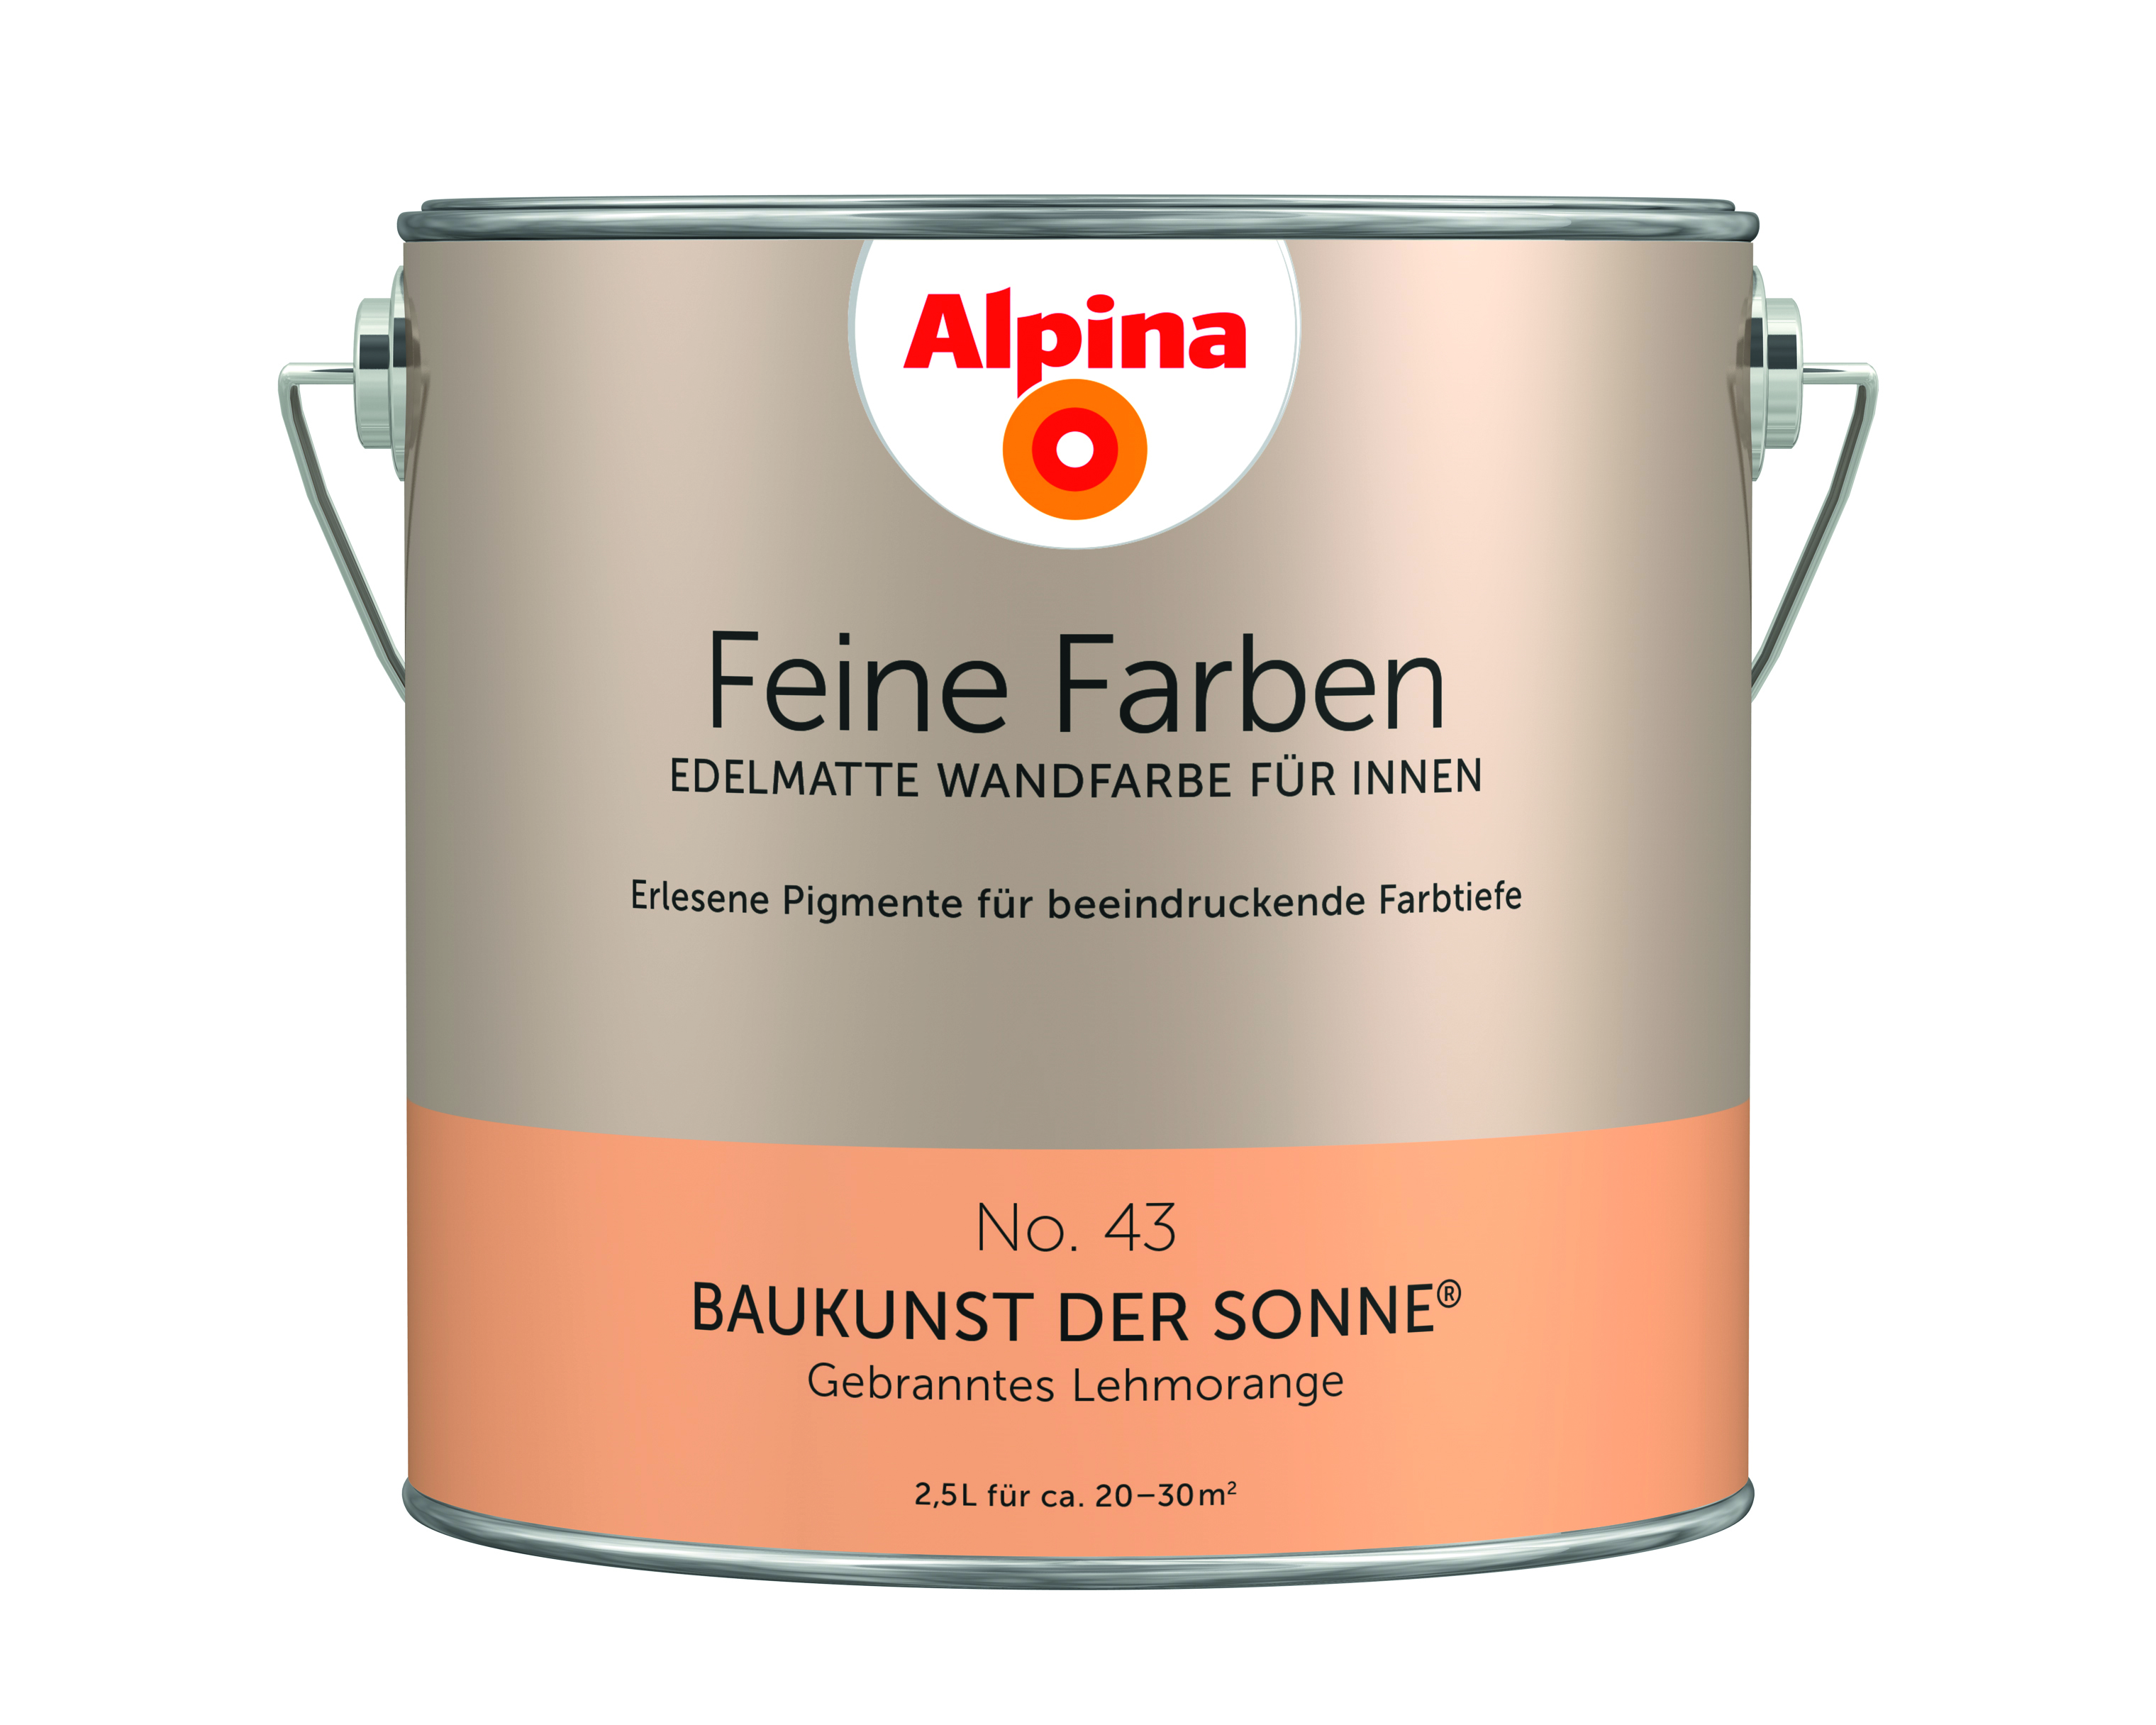 Alpina Feine Farben No. 43, Baukunst der Sonne